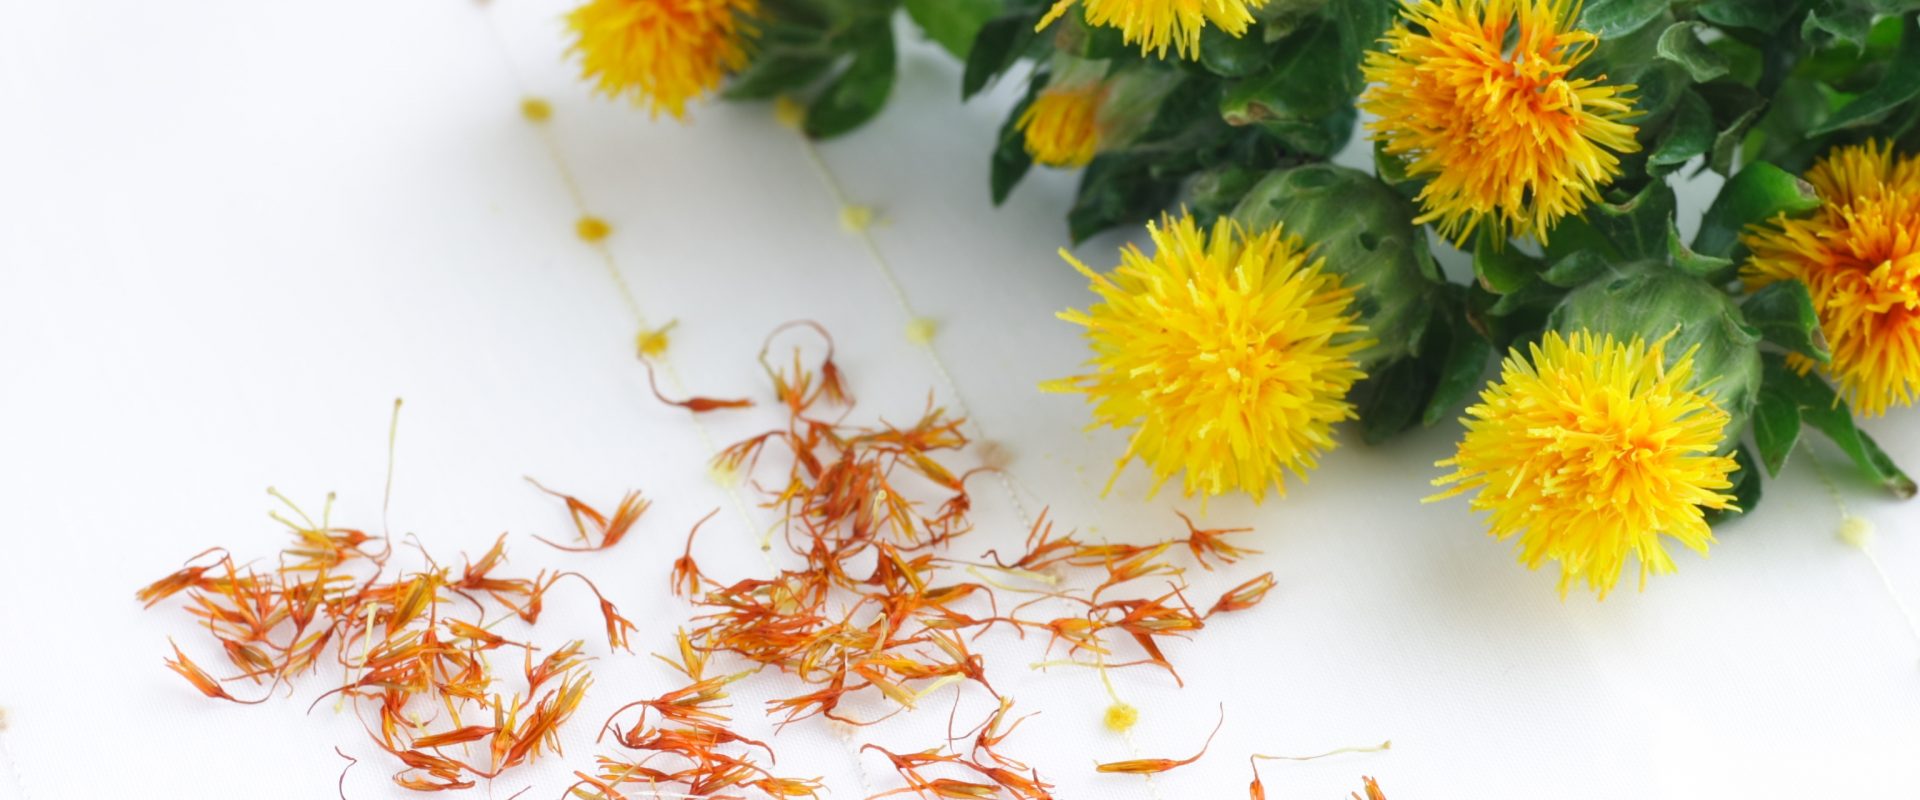 Krokosz barwierski - właściwości, działanie lecznicze i zastosowanie. Jak używać oleju krokoszowego oraz naparów z kwiatów krokosza? Żółto-pomarańczowe kwiaty krokosza na białym blacie.